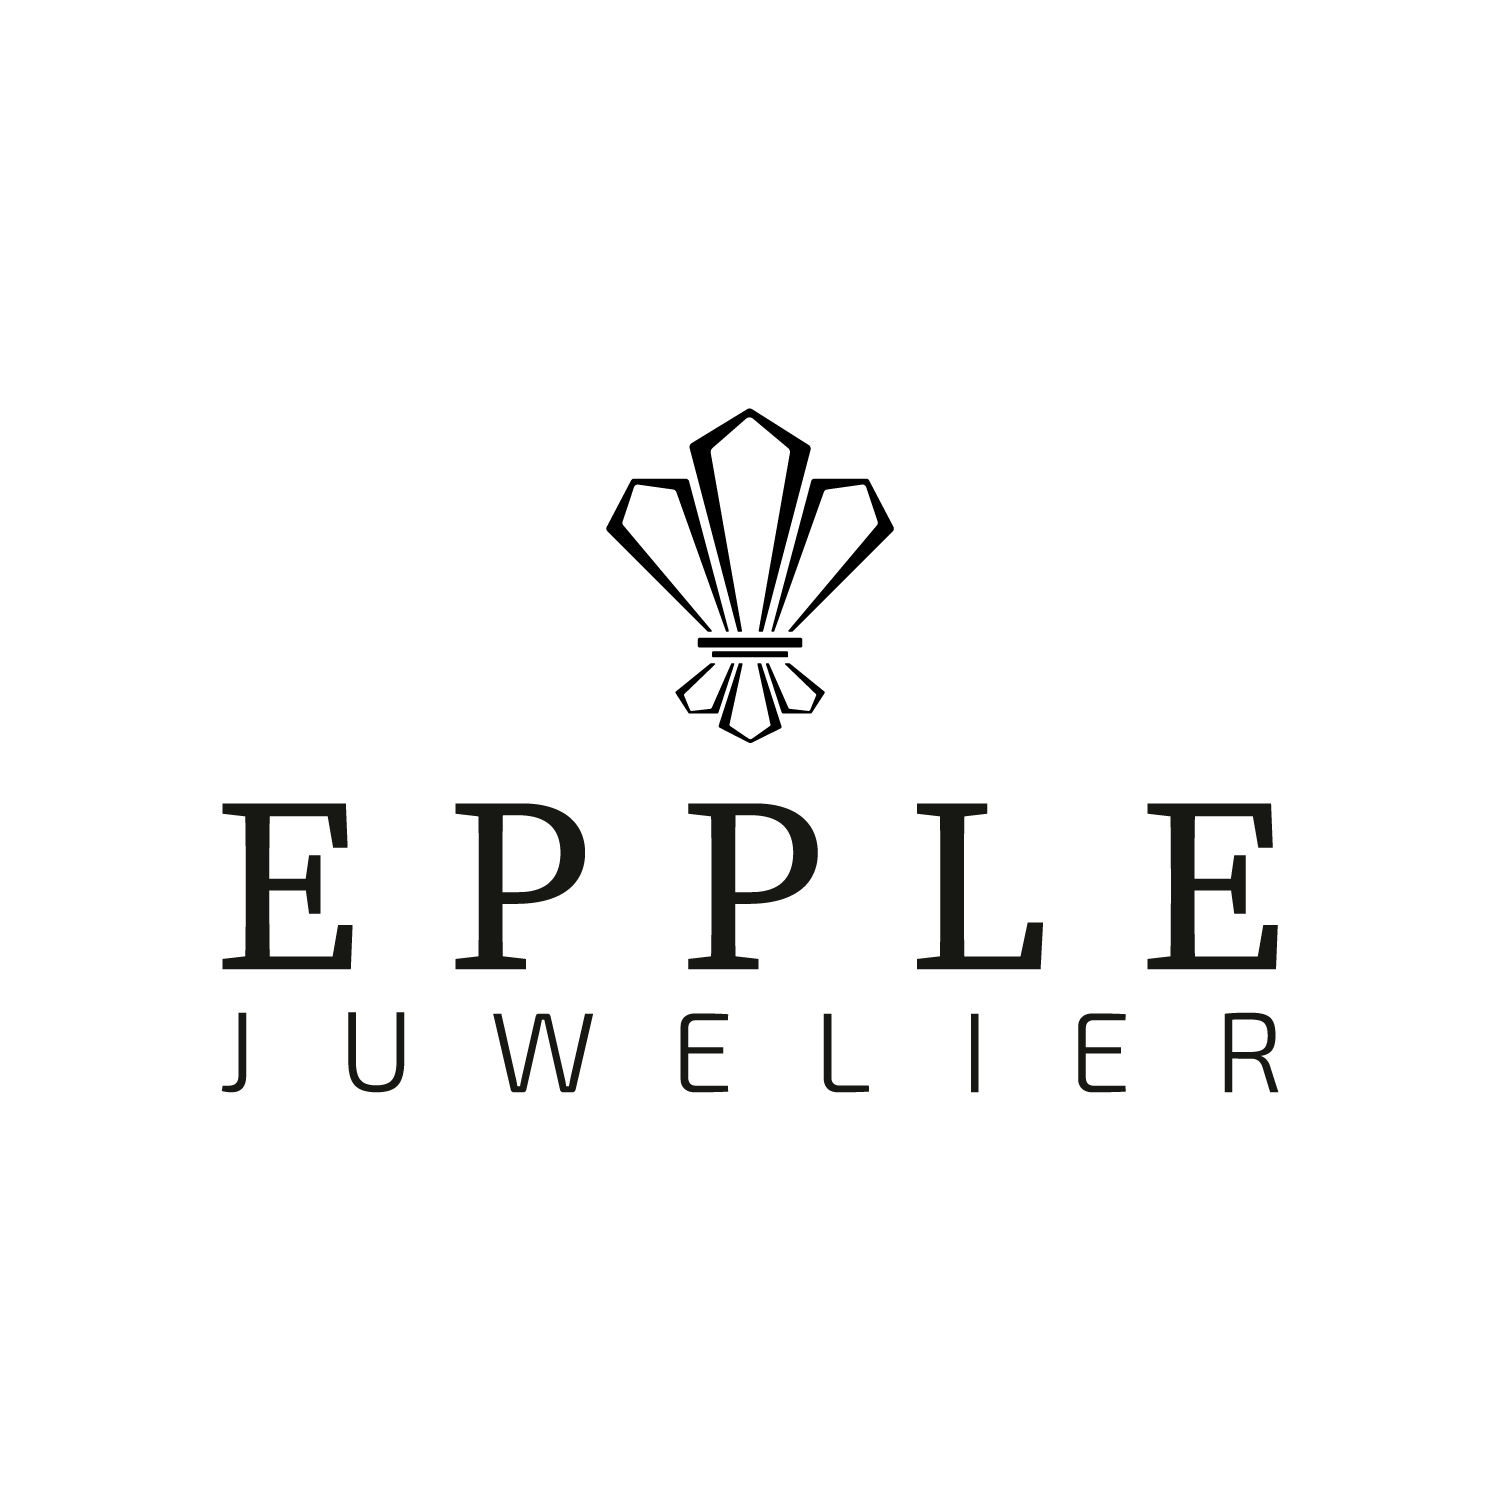 Logo Juweliere Epple - Offizieller Rolex Fachhändler